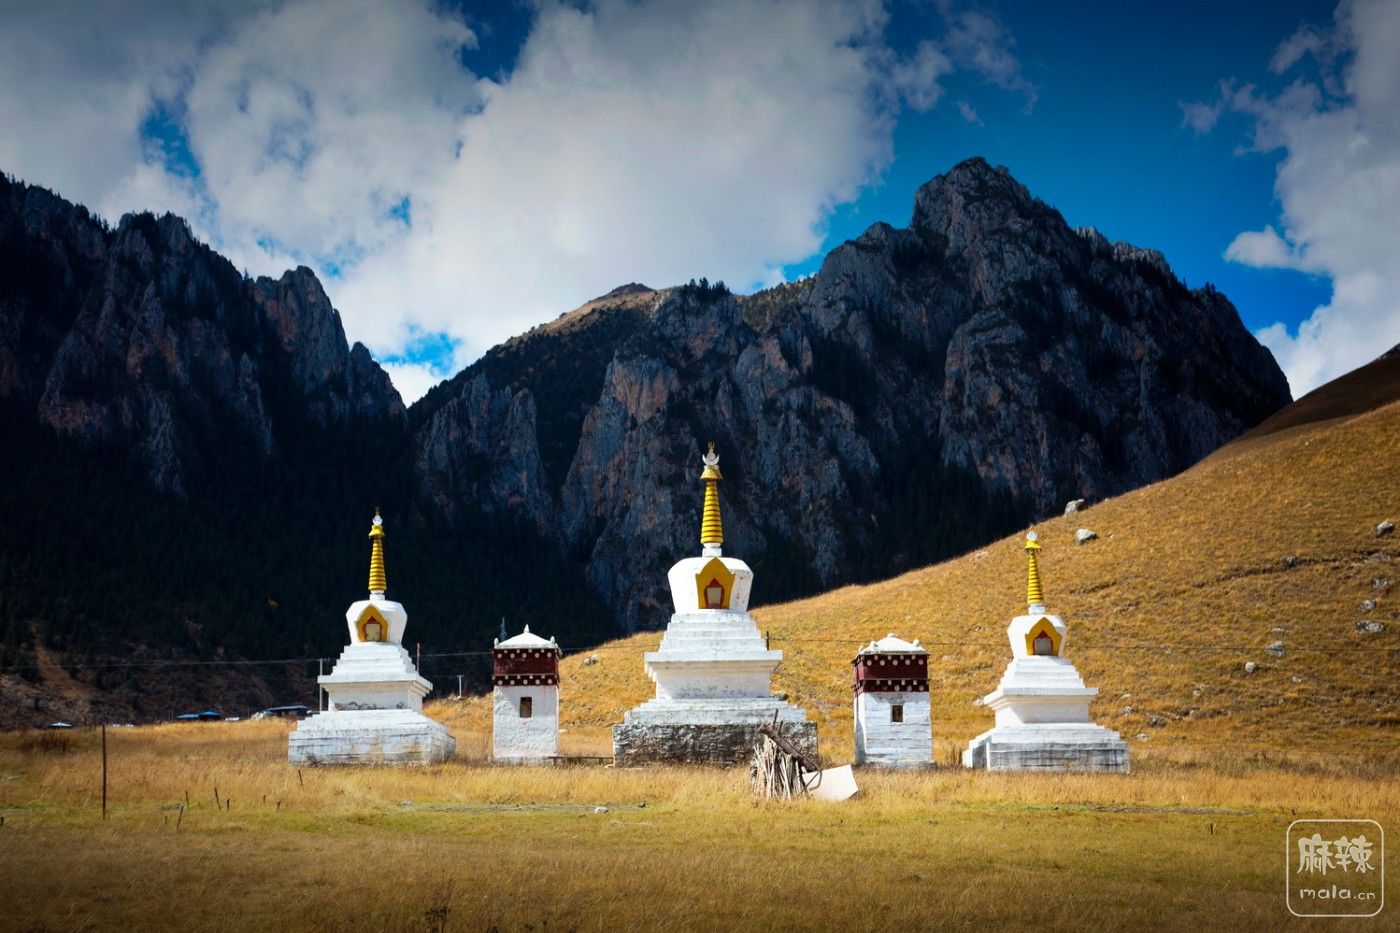 藏地人文地理 | 甘孜旅行三重奏 - 知乎